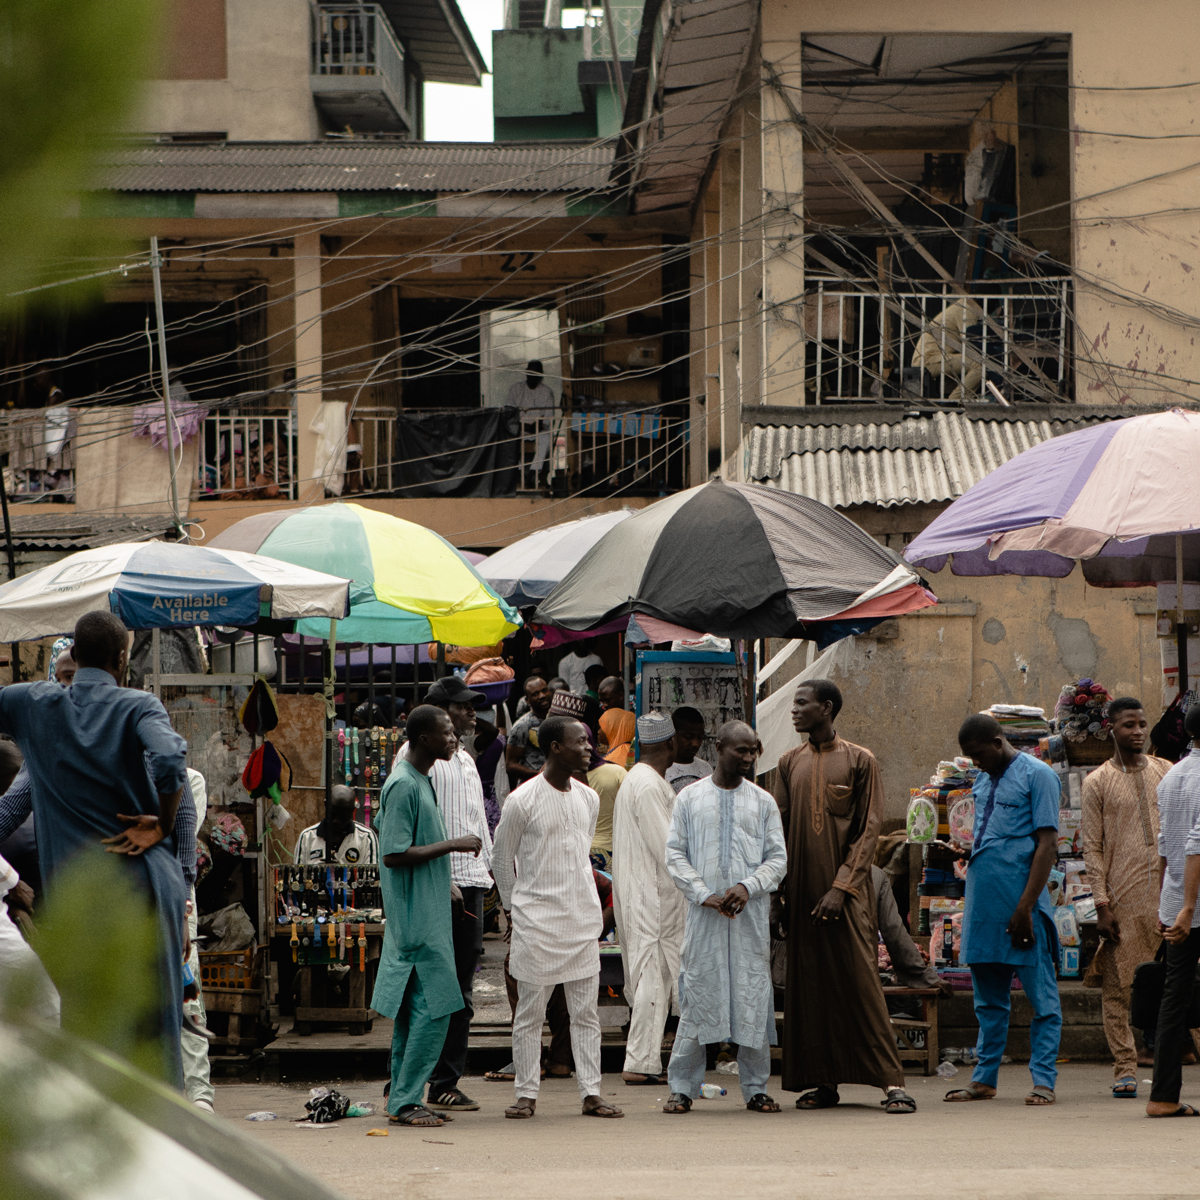 随着时尚旋风刮过这座尼日利亚大都市,vogue 的街拍摄影师 manny